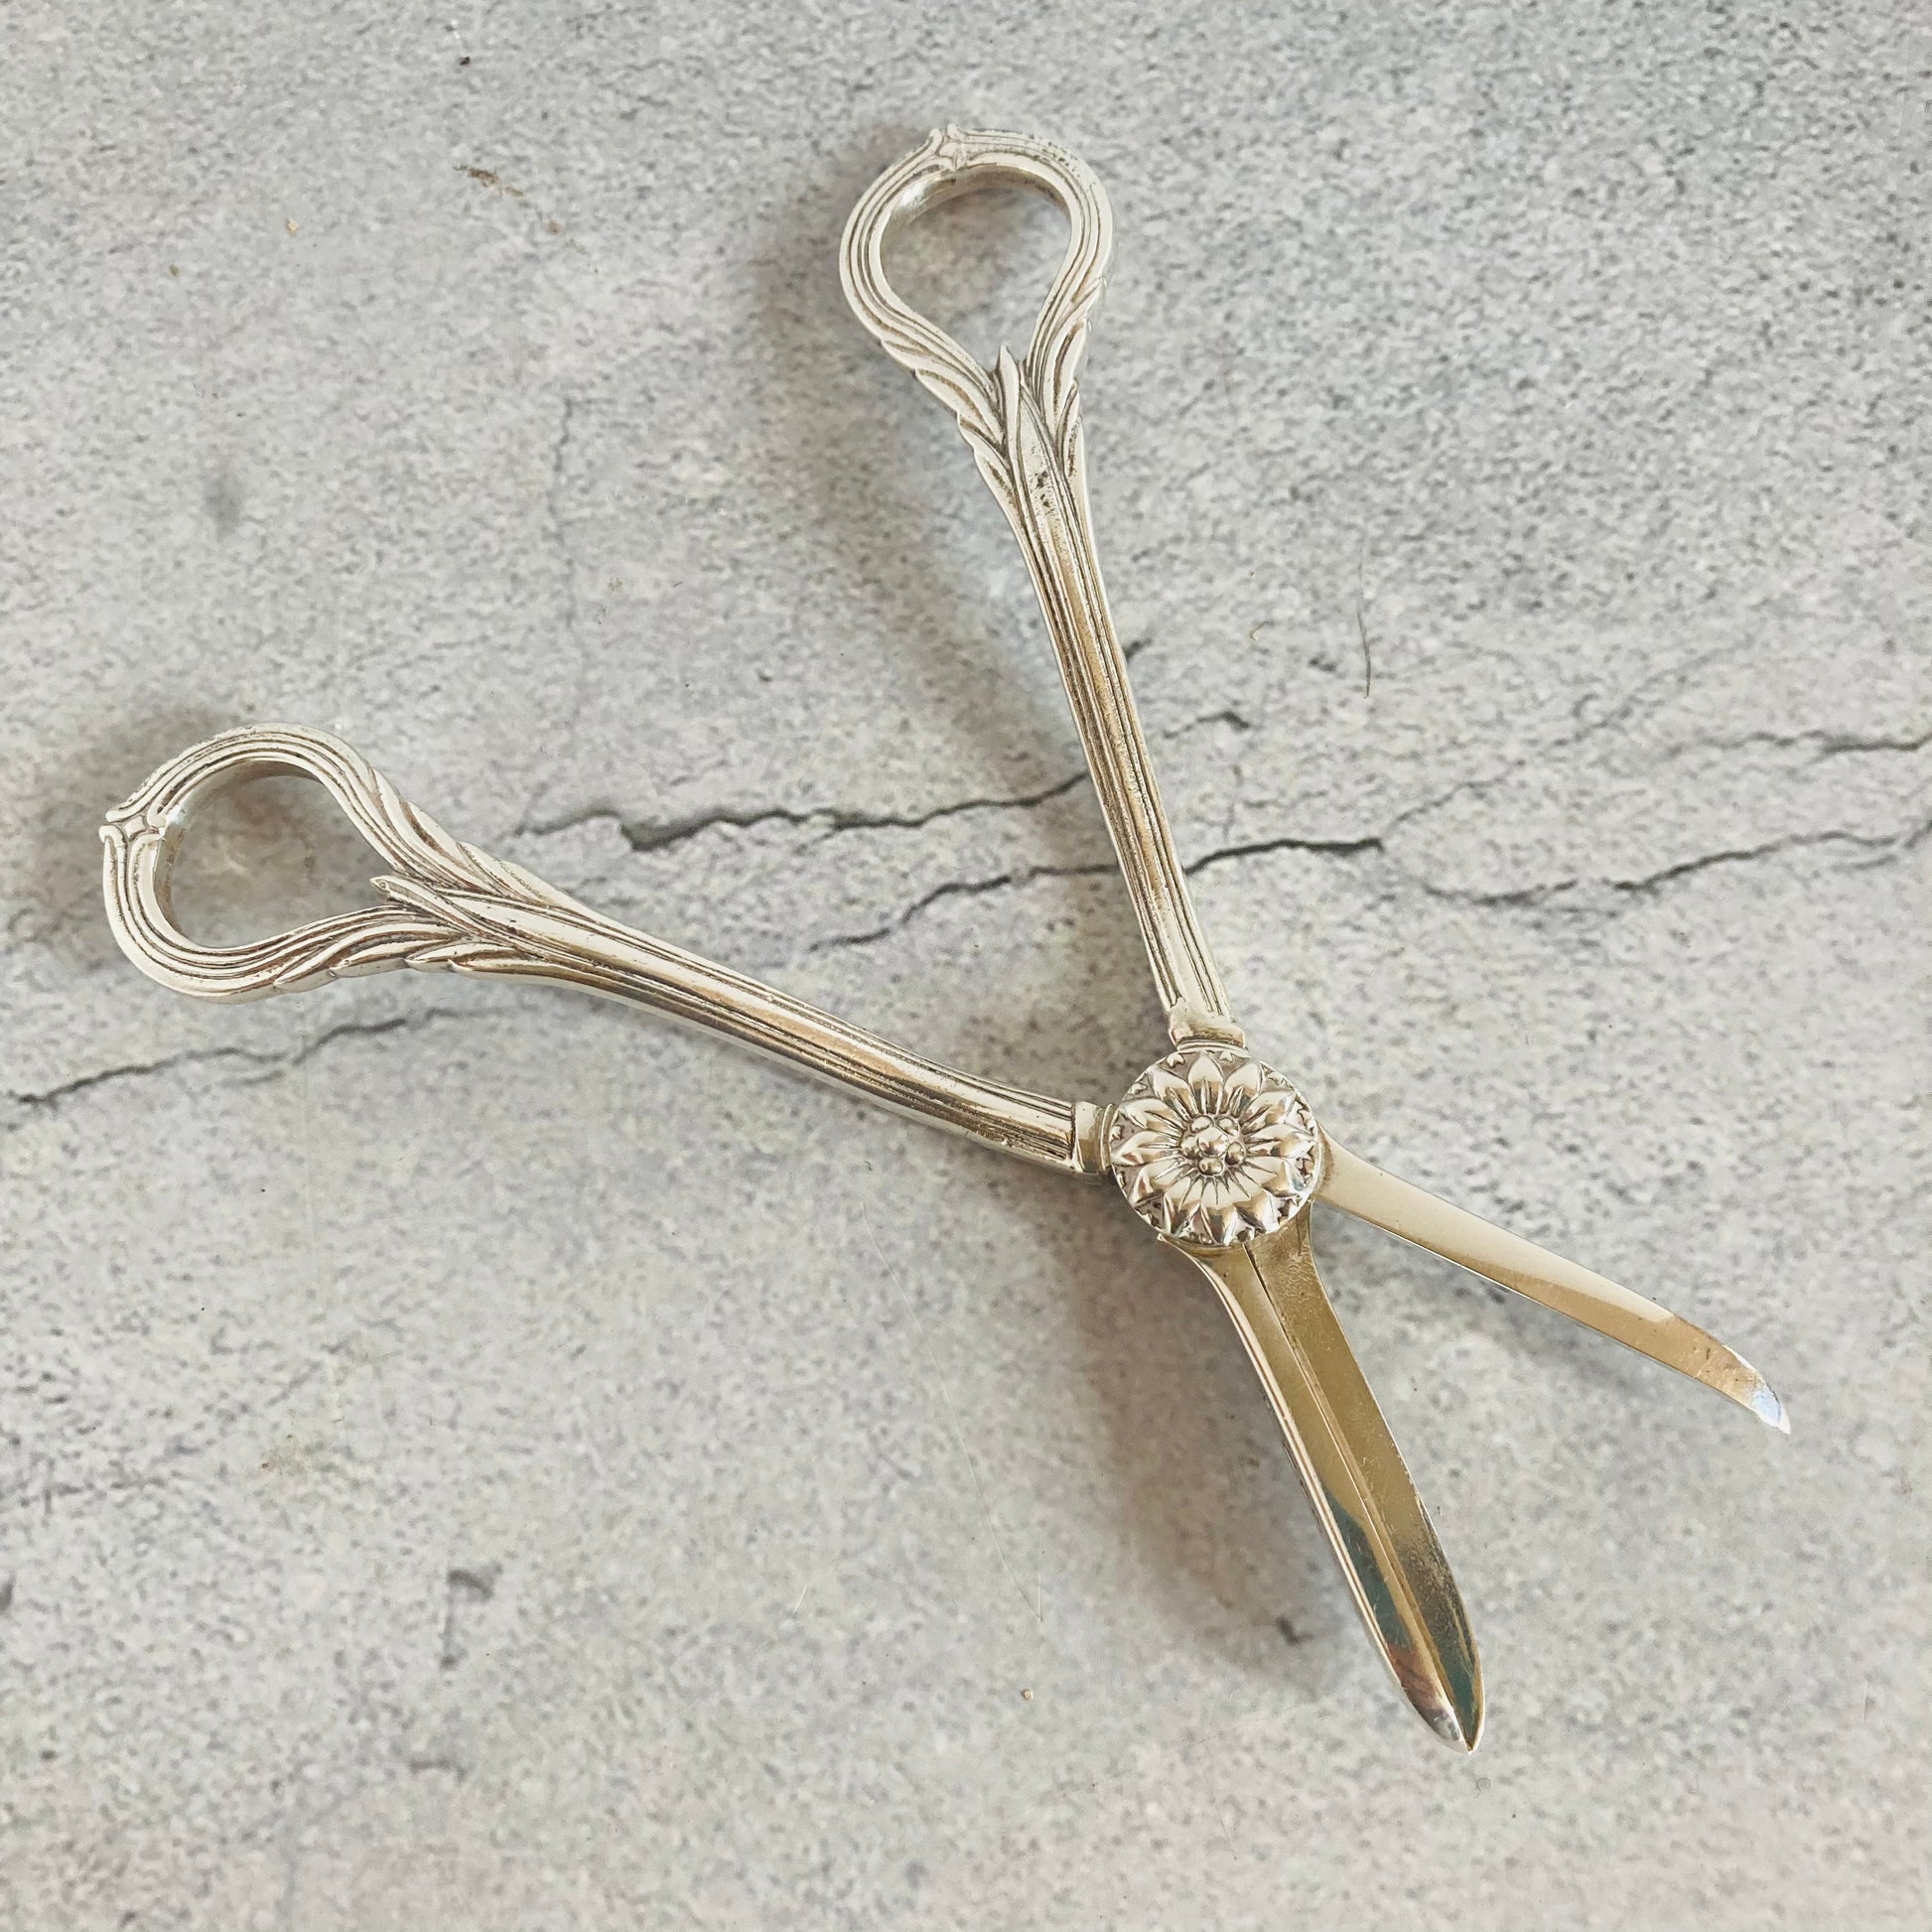 Rare Sterling Silver Grape Scissors